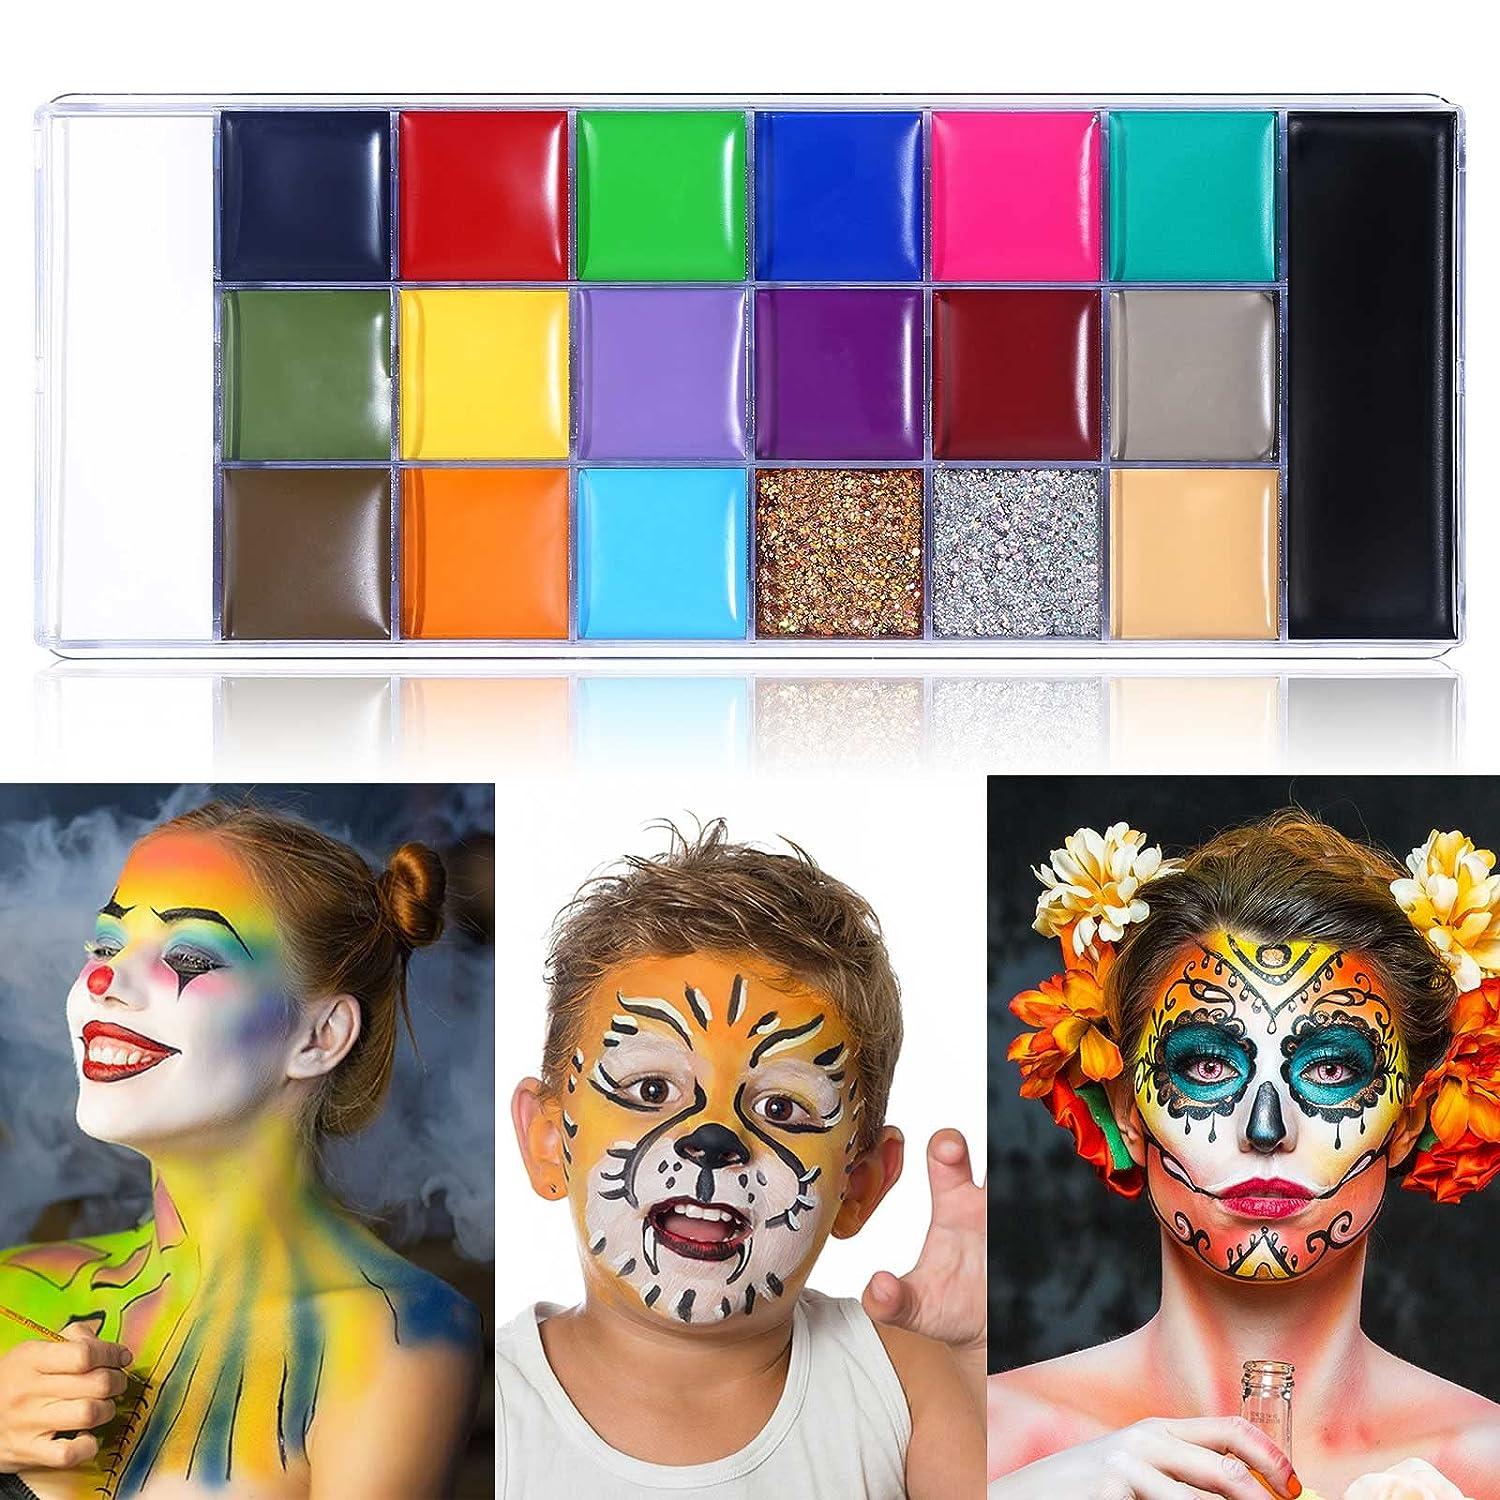 Face Paint Palette Body Face Paint Cosplay Makeup Palette Kit 15